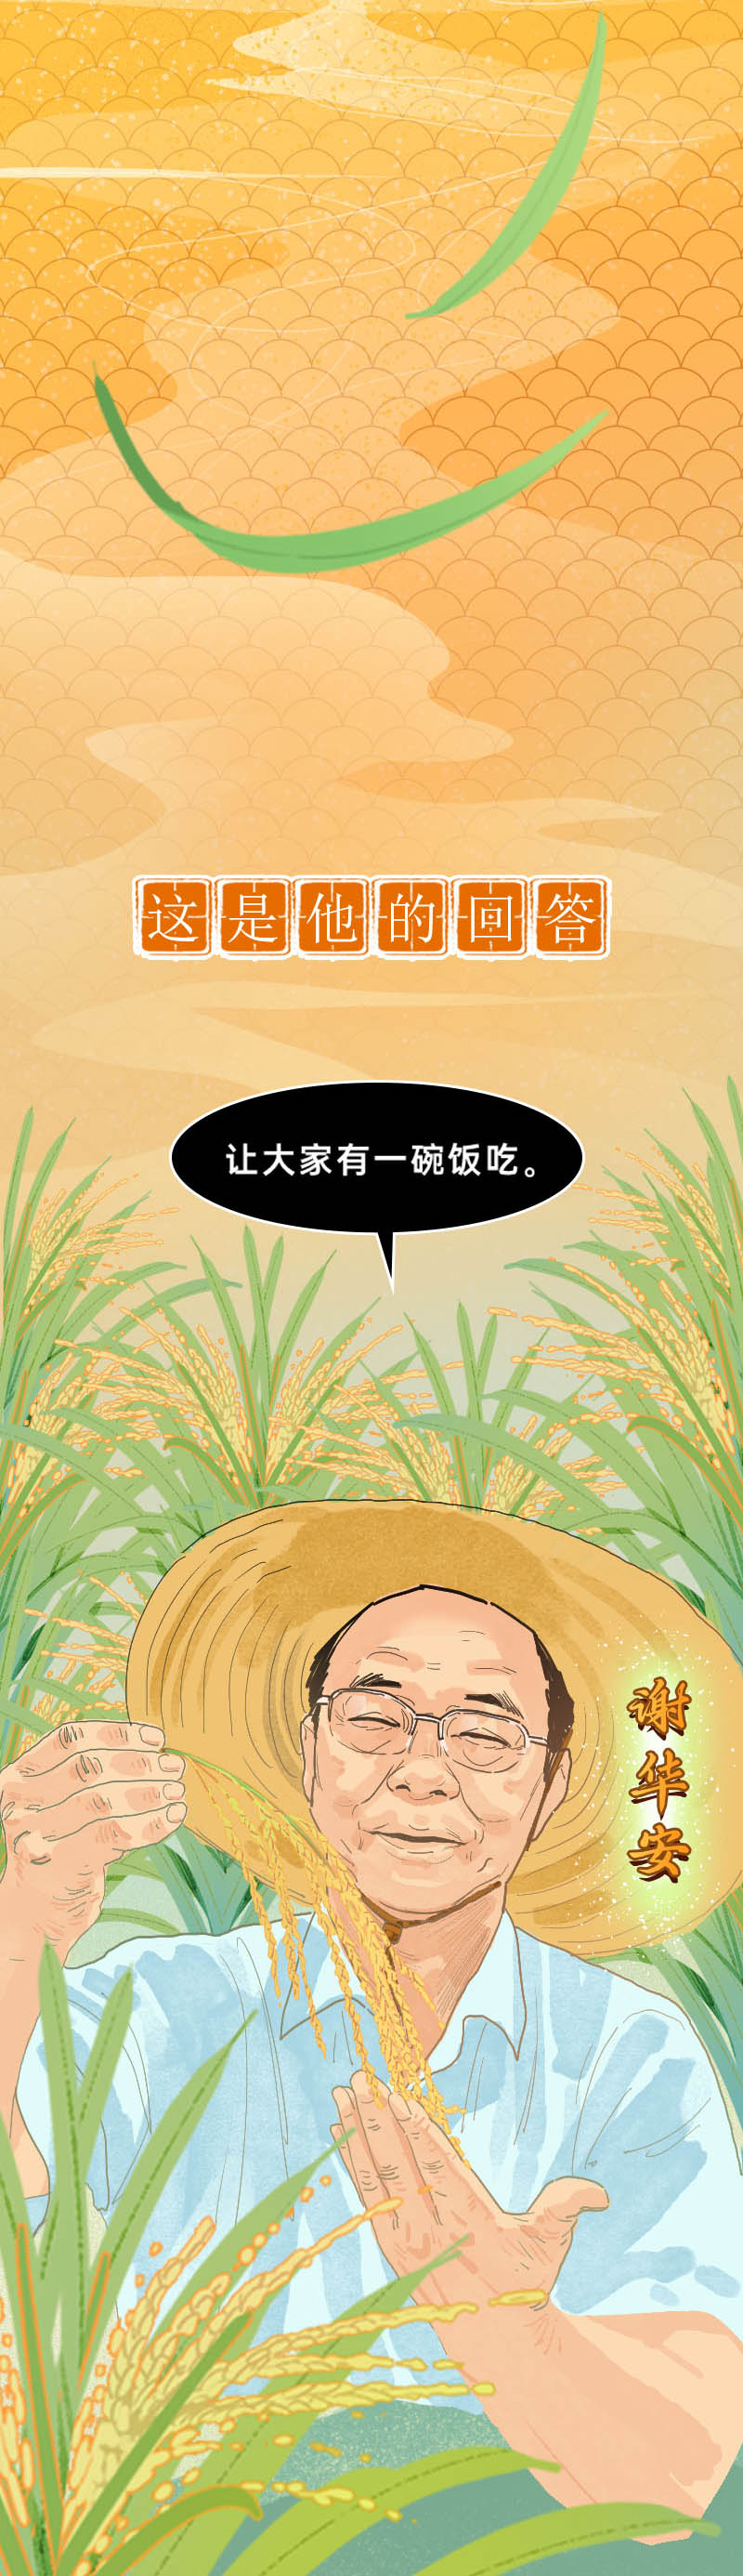 一粒种子改变世界：手绘长图纪念中国攻克杂交水稻难关 50 周年